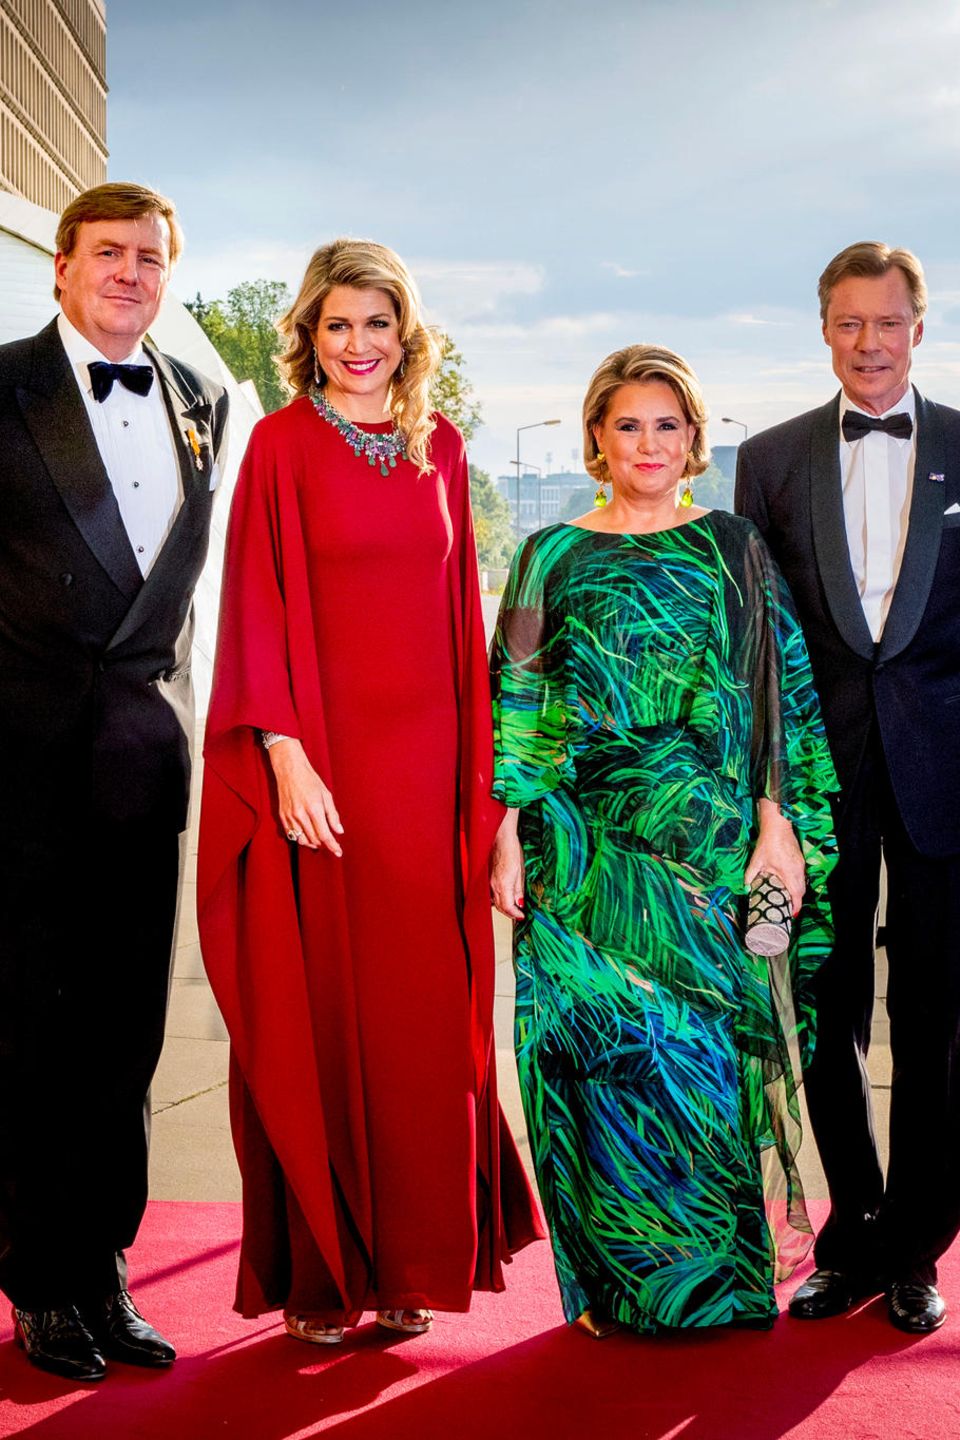 In Freundschaft verbunden: die Royals aus den Niederlanden und Luxemburg. Von links König Willem-Alexander, Königin Máxima, Großherzpgin Maria Teresa, Großherzog Henri